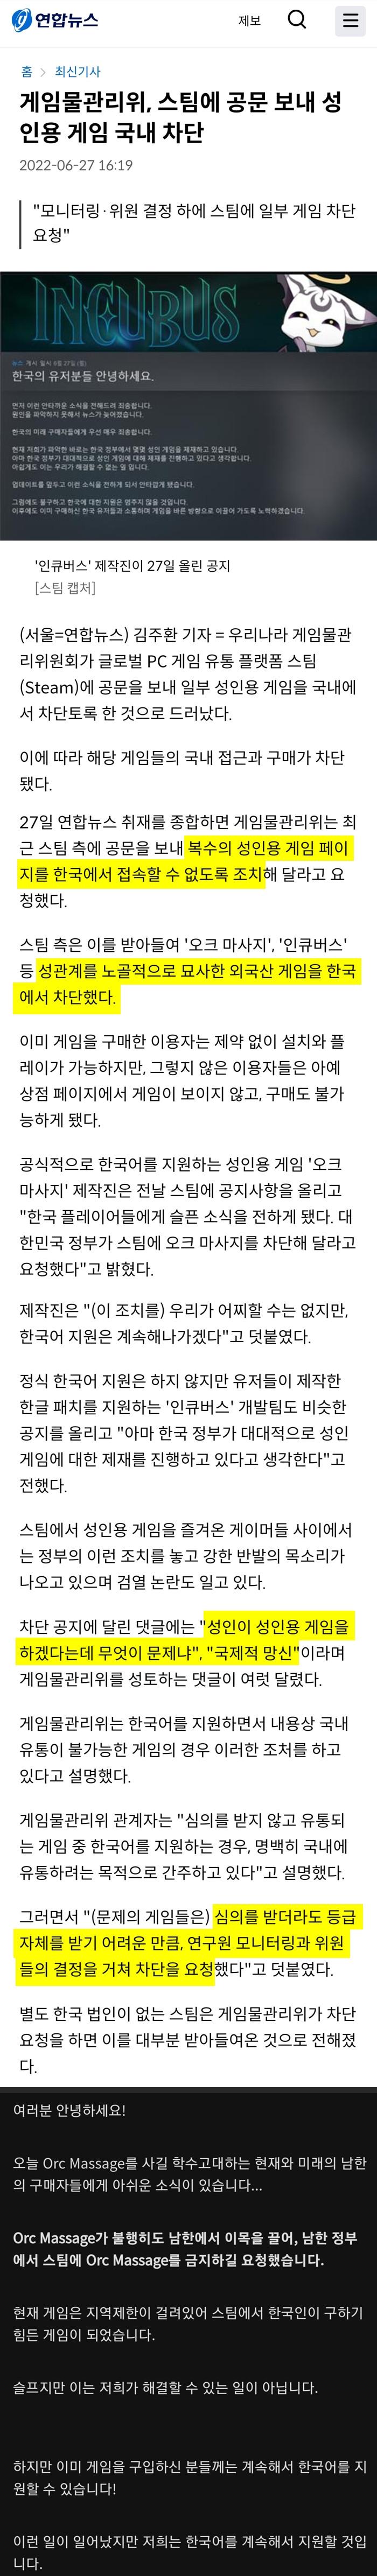 한국 스팀 성인게임 금지 사태